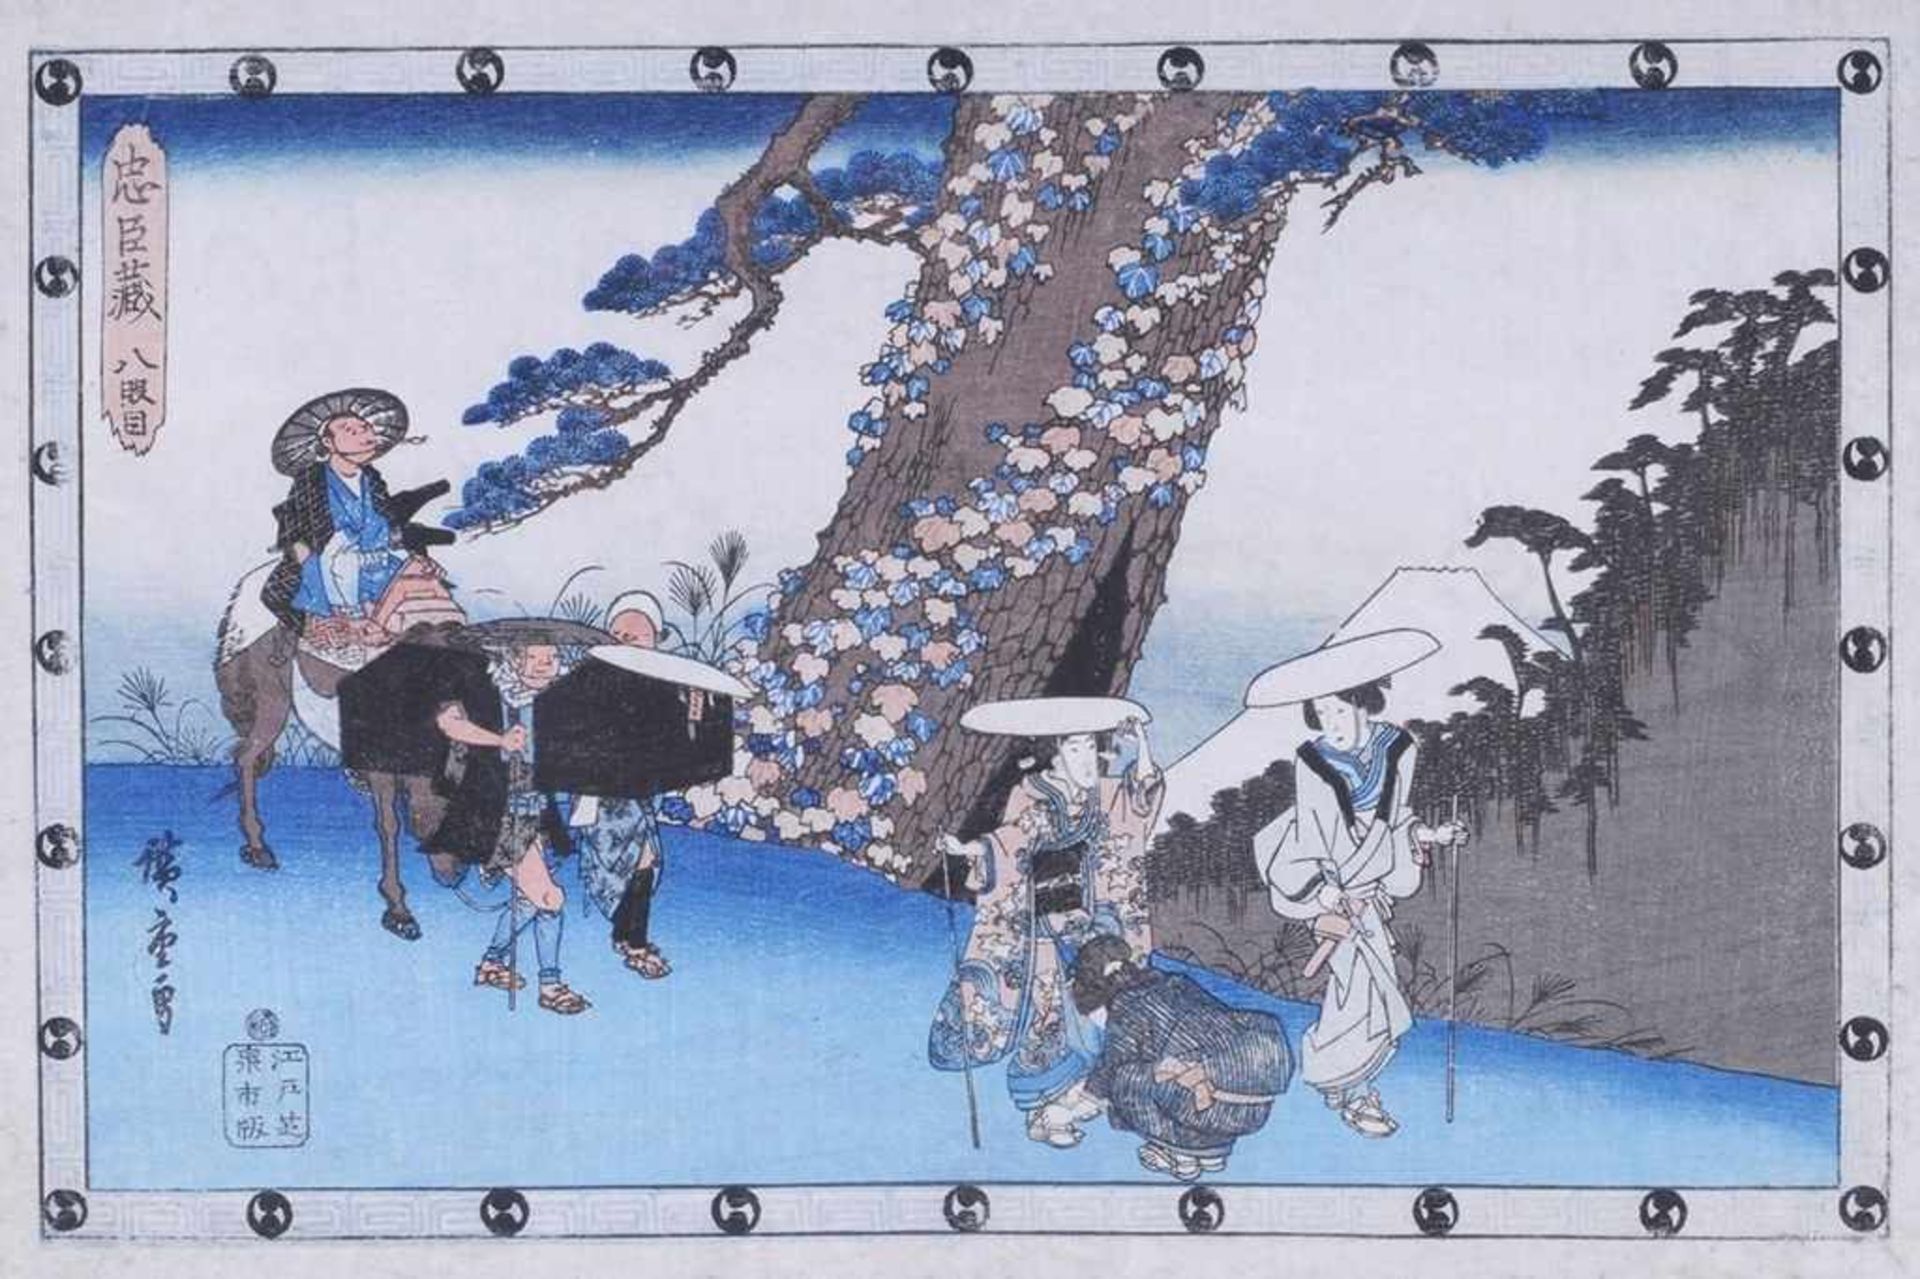 Hiroshige, Utagawa (Edo 1797 - 1858) Farbholzschnitt. "Michiyuki". Mehrfigurige Reiseszene,